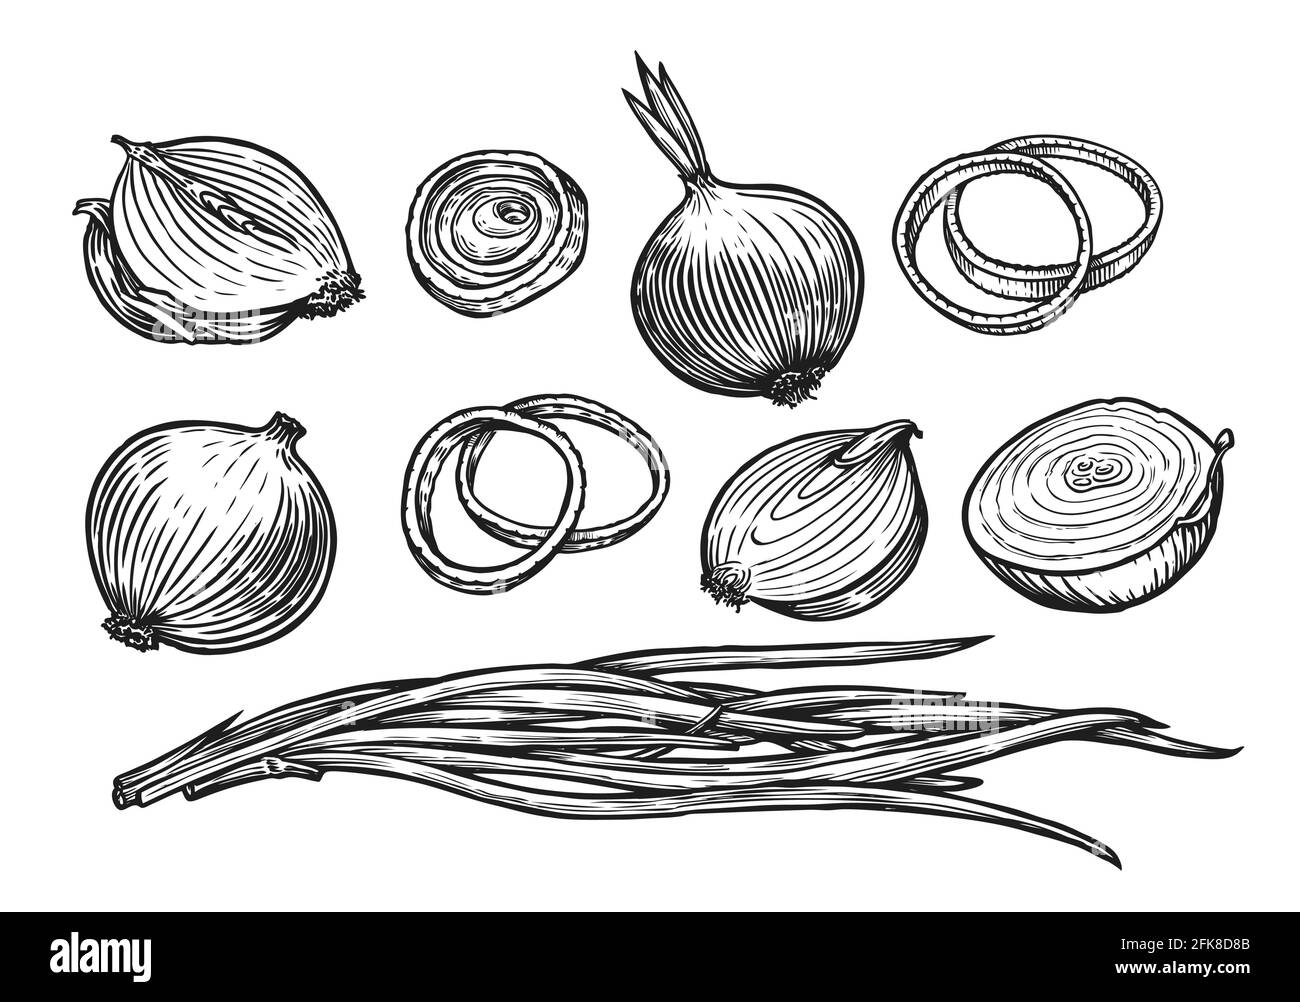 Onion drawing #drawing #draw #art #onion #oniondrawing | TikTok